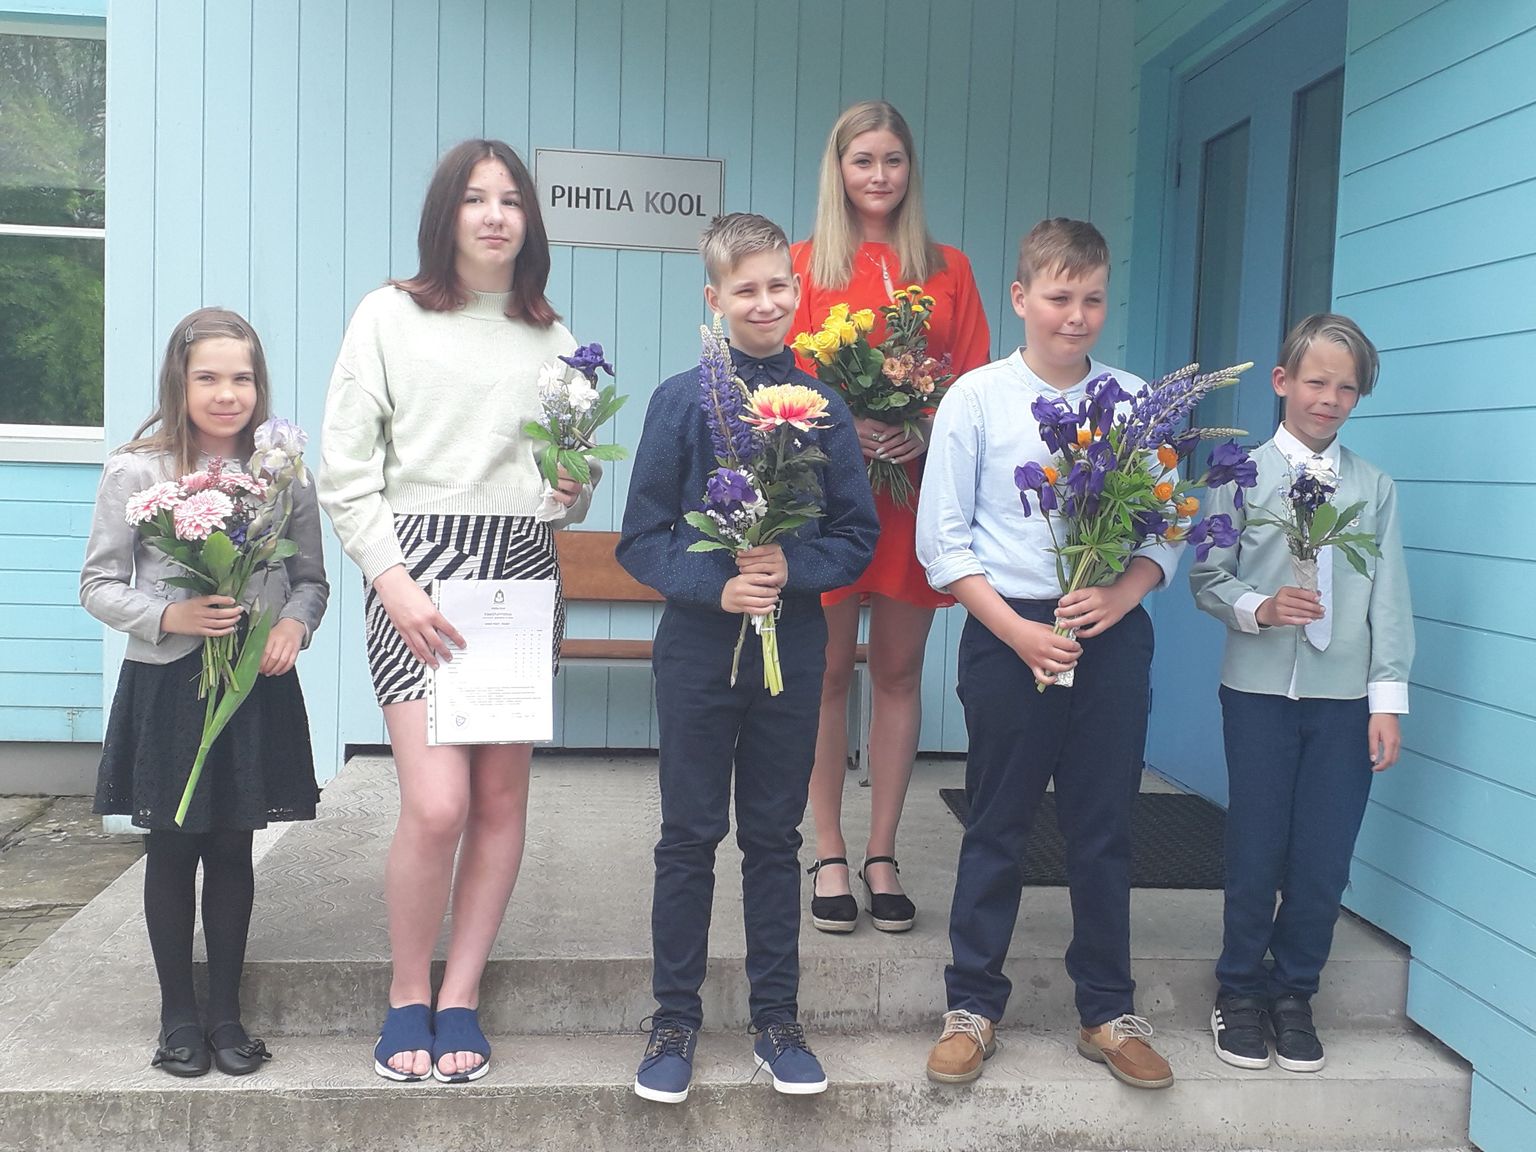 Pihtla kooli lõpetajad (vasakult) Eti Nõgu, Adelii- Marii Jõeäär, Markus Viin, Raul Randmaa ja Aron Väli 8. mail 2022. Laste klassijuhtaja on Eva Jantra.